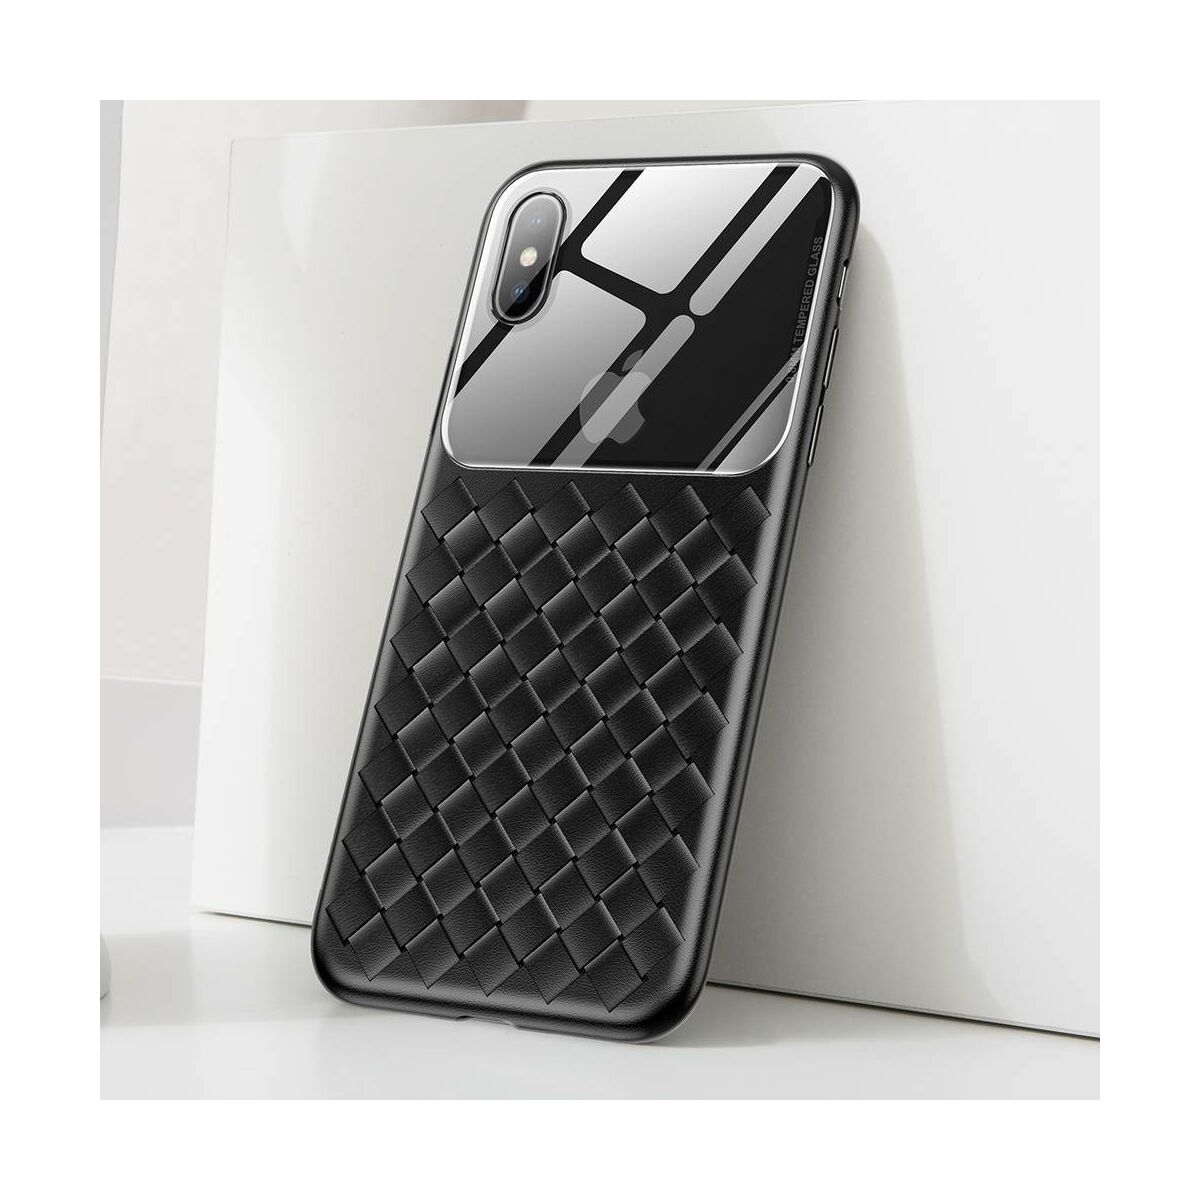 Kép 4/10 - Baseus iPhone XS Max üveg & tok, BV Weaving, fekete (WIAPIPH65-BL01)